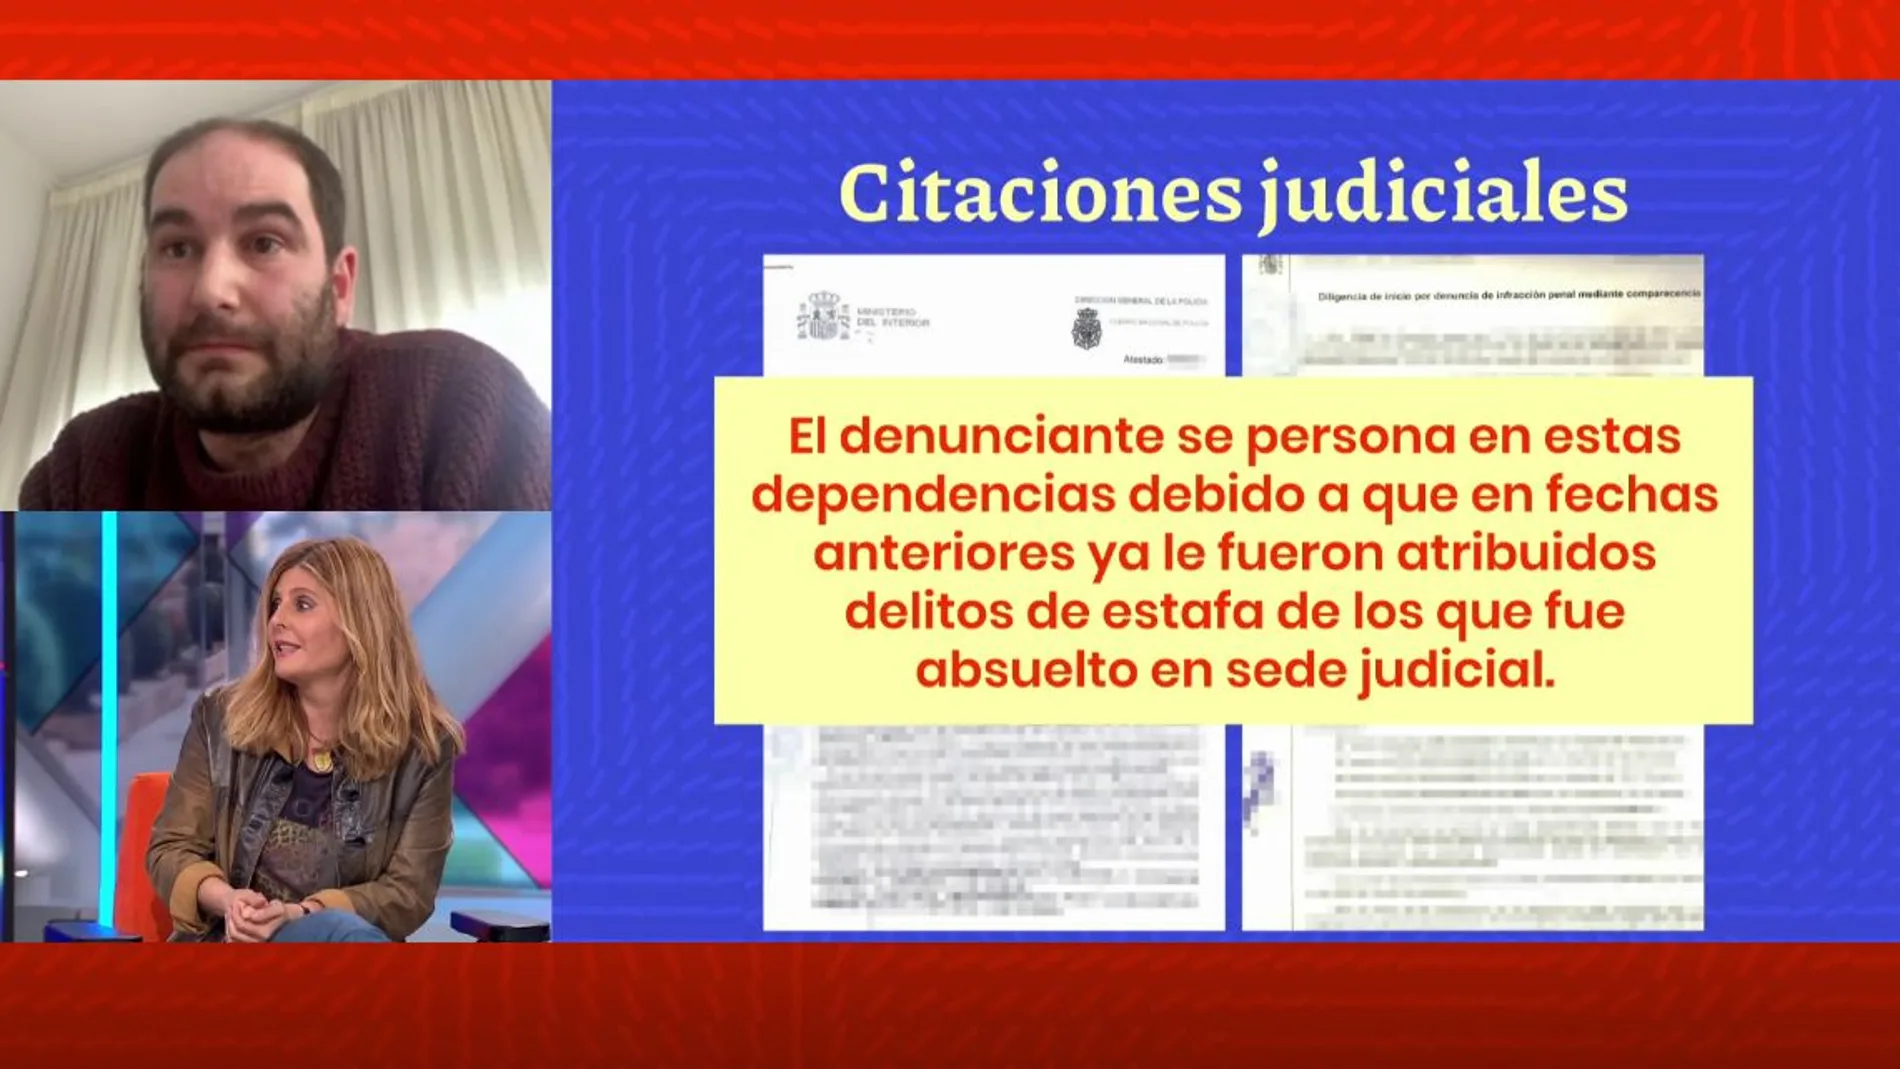 Citaciones judiciales.